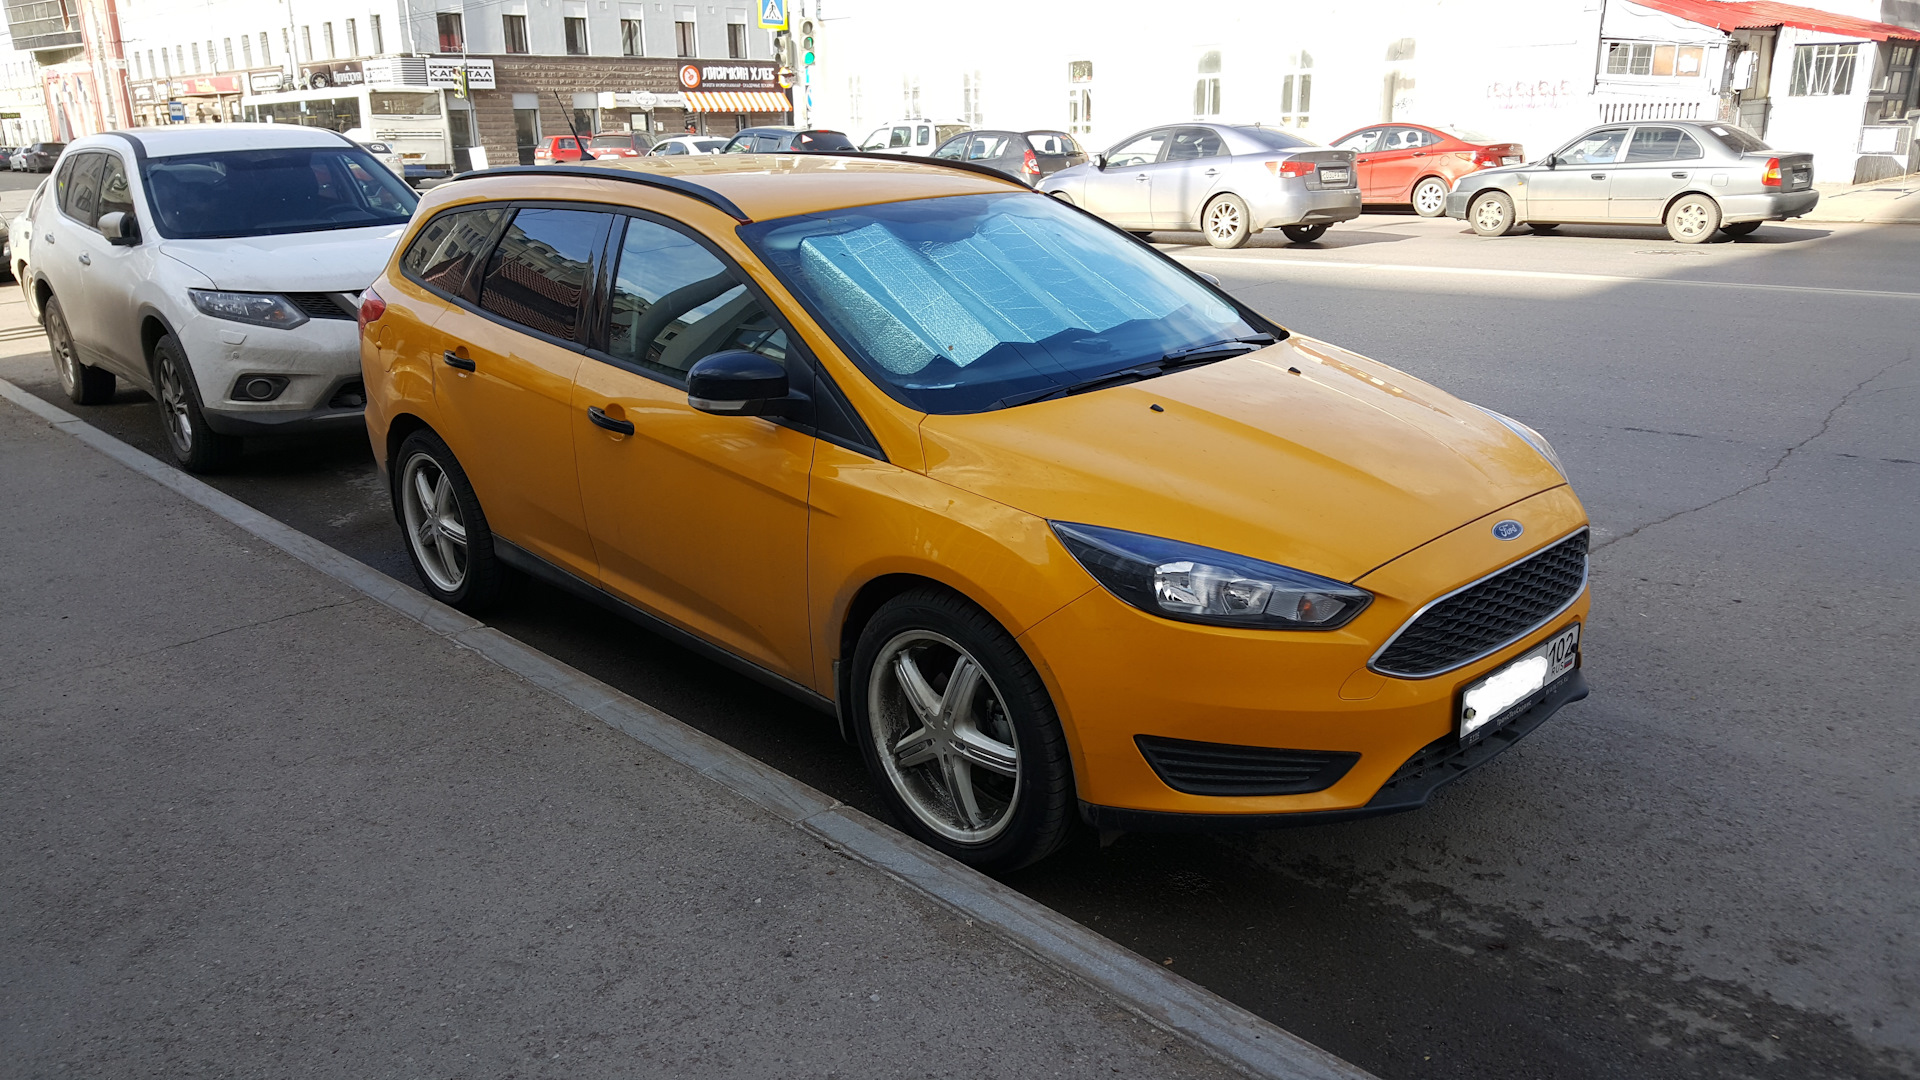 Такси в аренду без залога и депозита. Форд фокус 3 универсал желтый. Форд фокус 3 универсал 2016 желтый. Ford Focus 3 такси. Ford Focus универсал желтый.